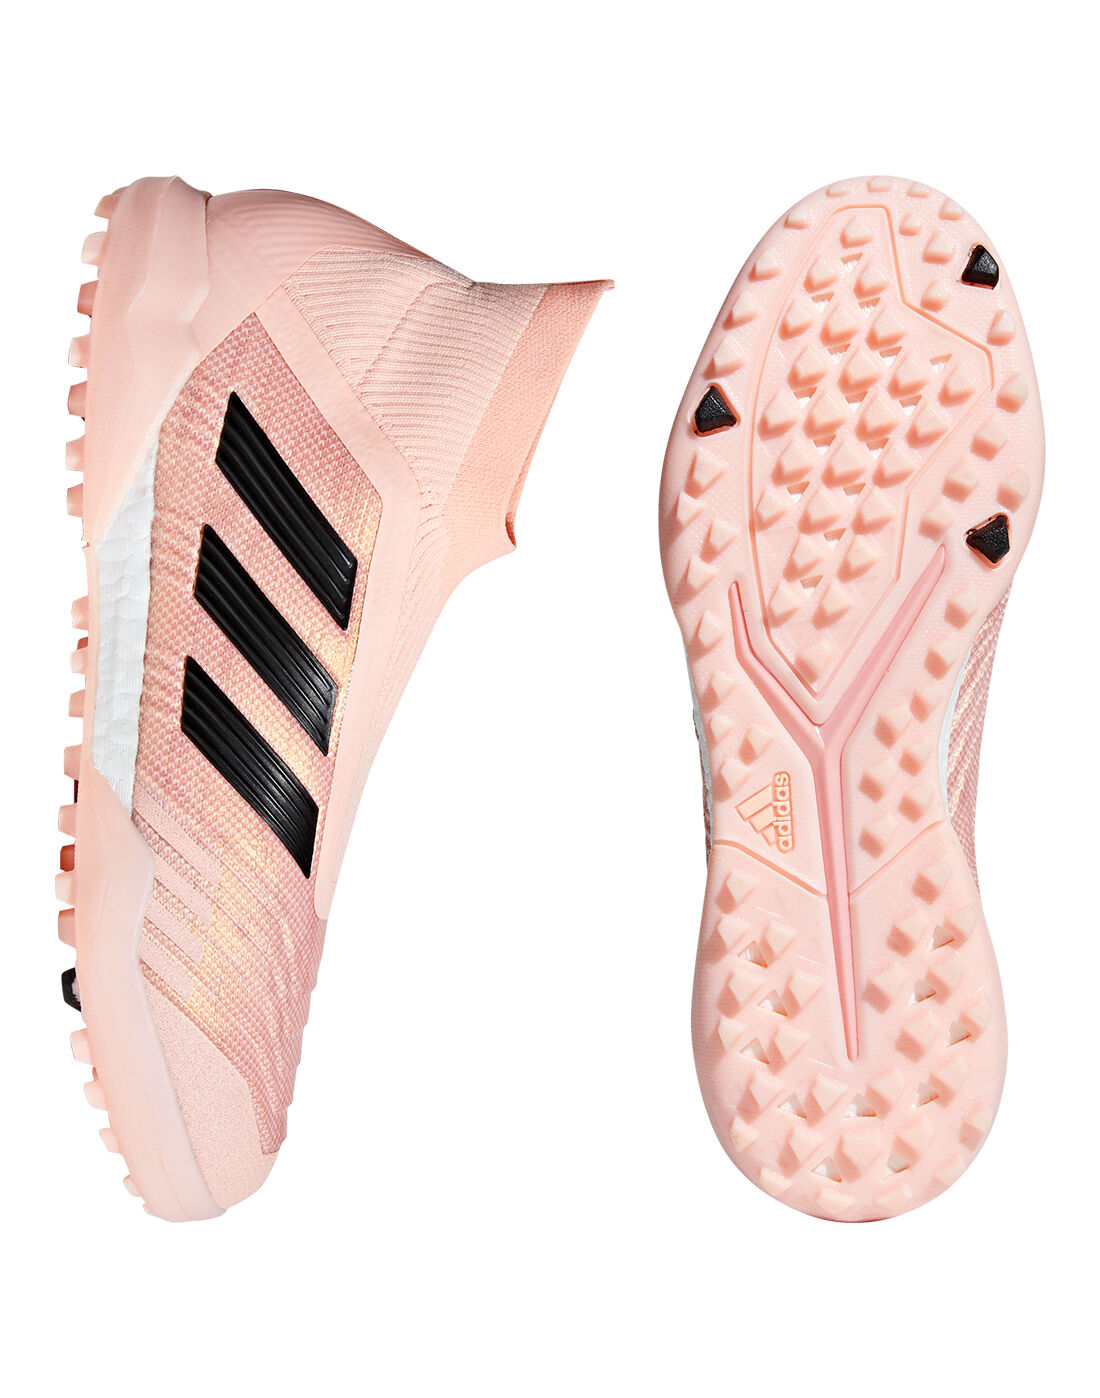 adidas predator pink astro turf